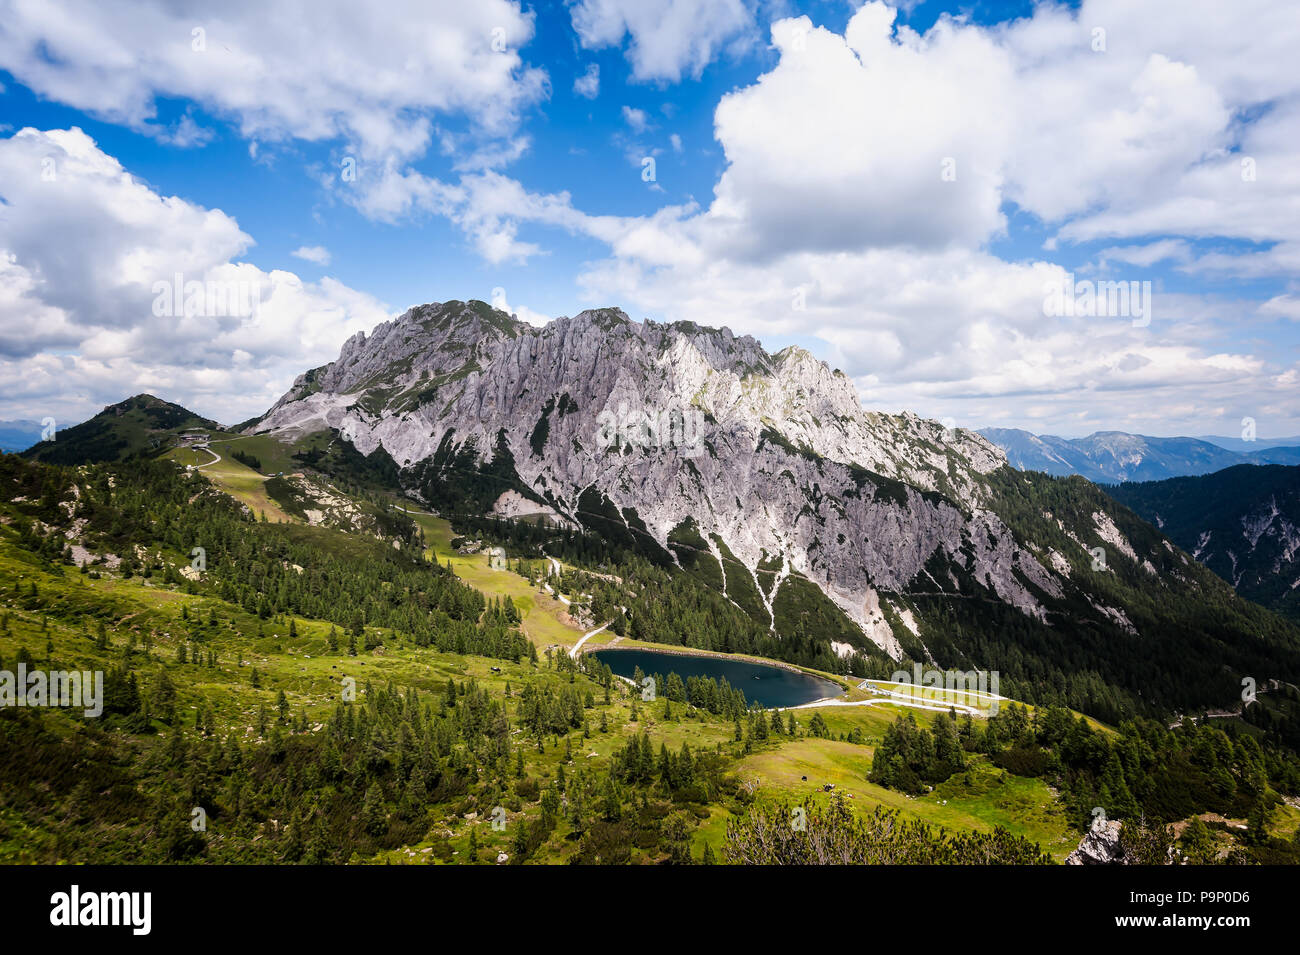 Angolo alto vista panoramica sulle Alpi Giulie in estate, come si vede dal Passo Pramollo sul confine tra Italia e Austria. Paesaggio di montagna. Foto Stock